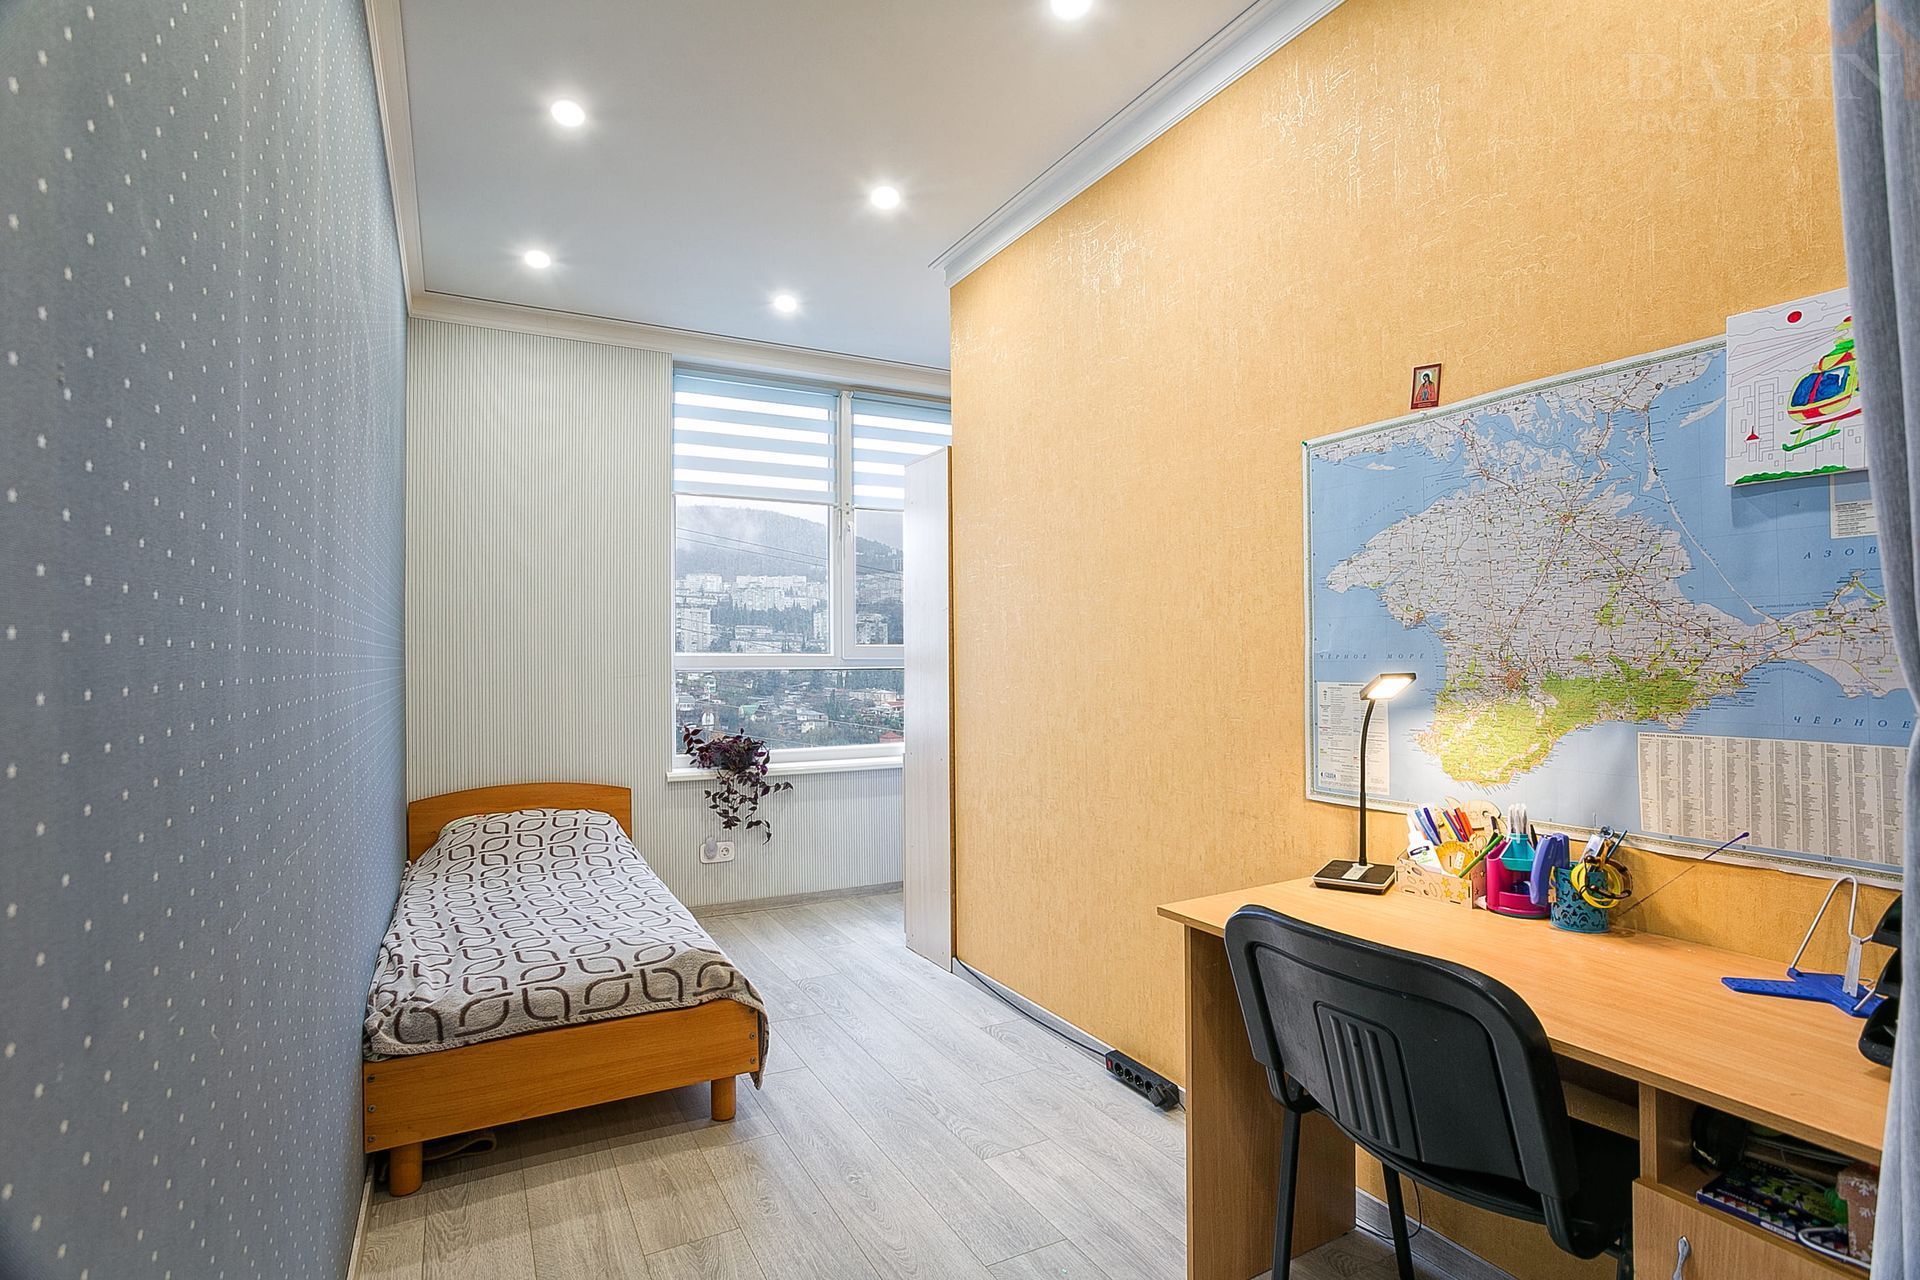 Продаётся двухкомнатная квартира со свежим ремонтом в Жилом комплексе комфорт-класса «Алмаз». Площадь 55,6 кв.м.